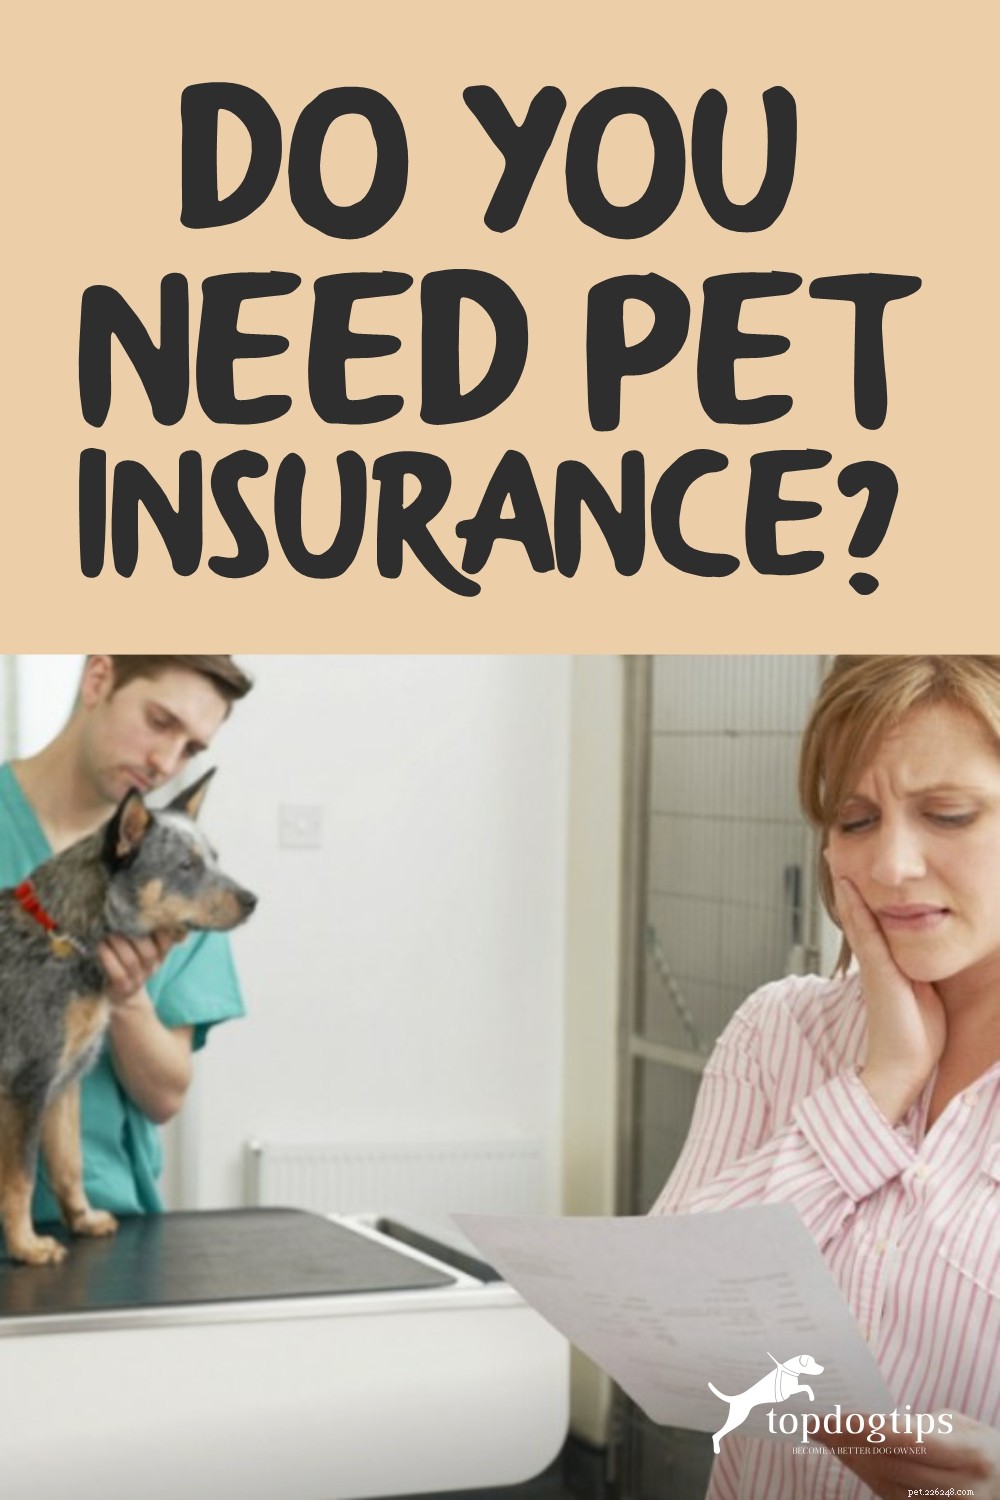 애완동물 보험이 필요하십니까?